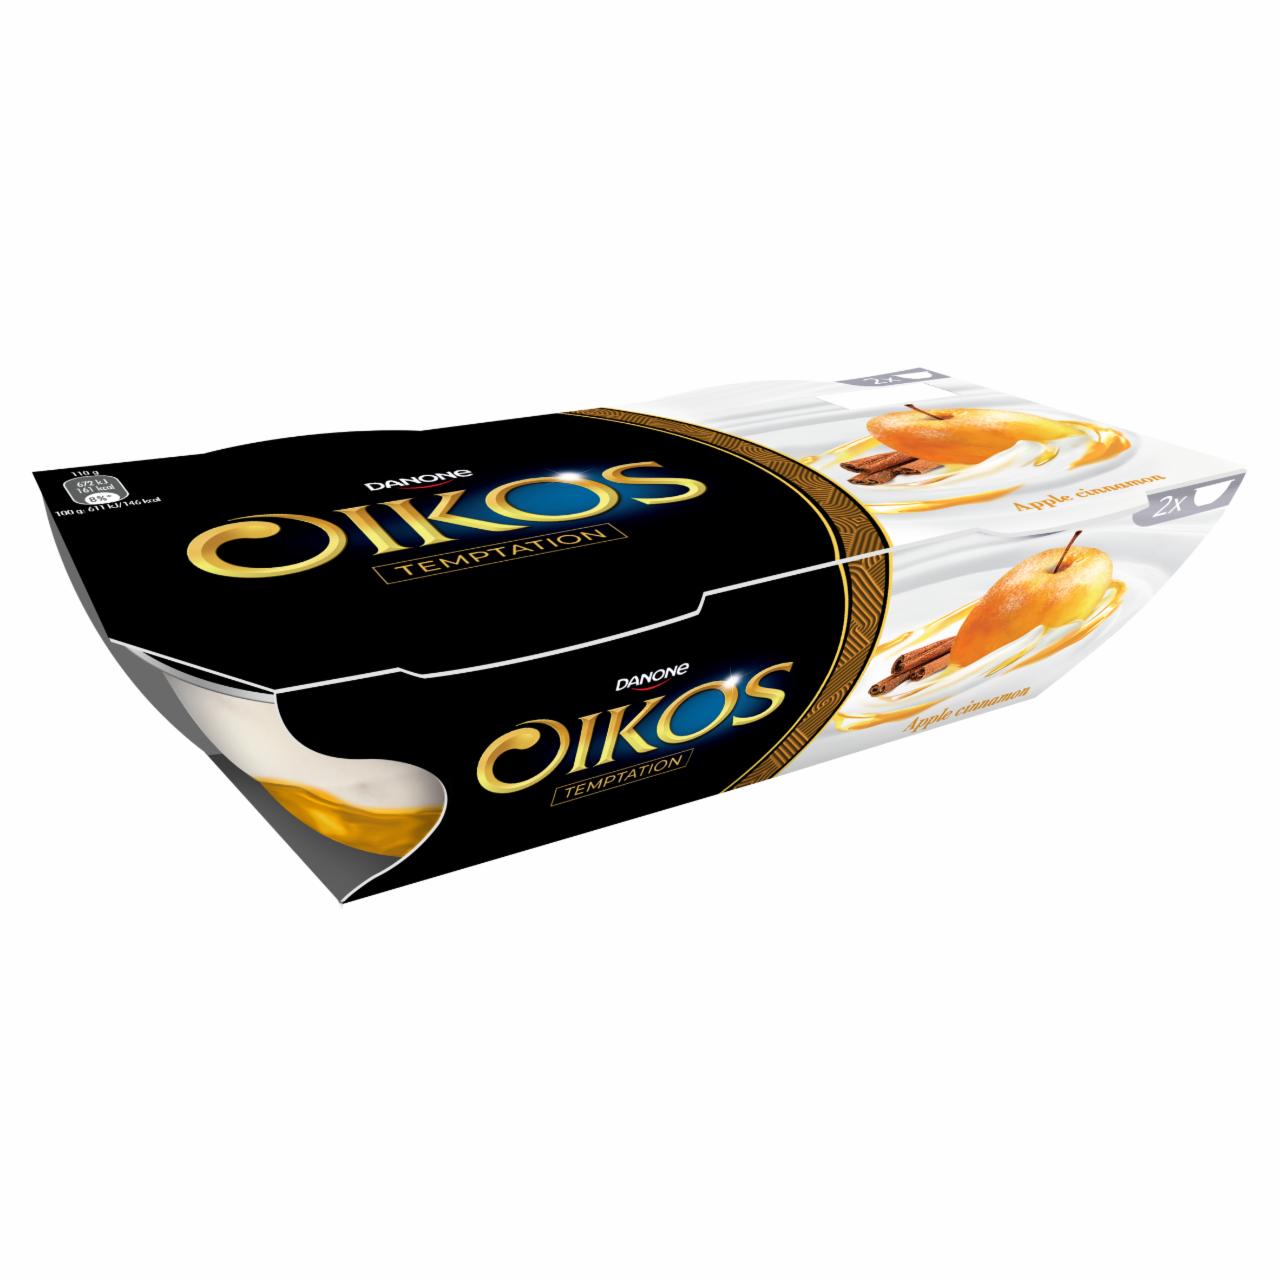 Képek - Danone Oikos élőflórás édesített görög krémjoghurt almás-fahéjas öntettel 2 x 110 g